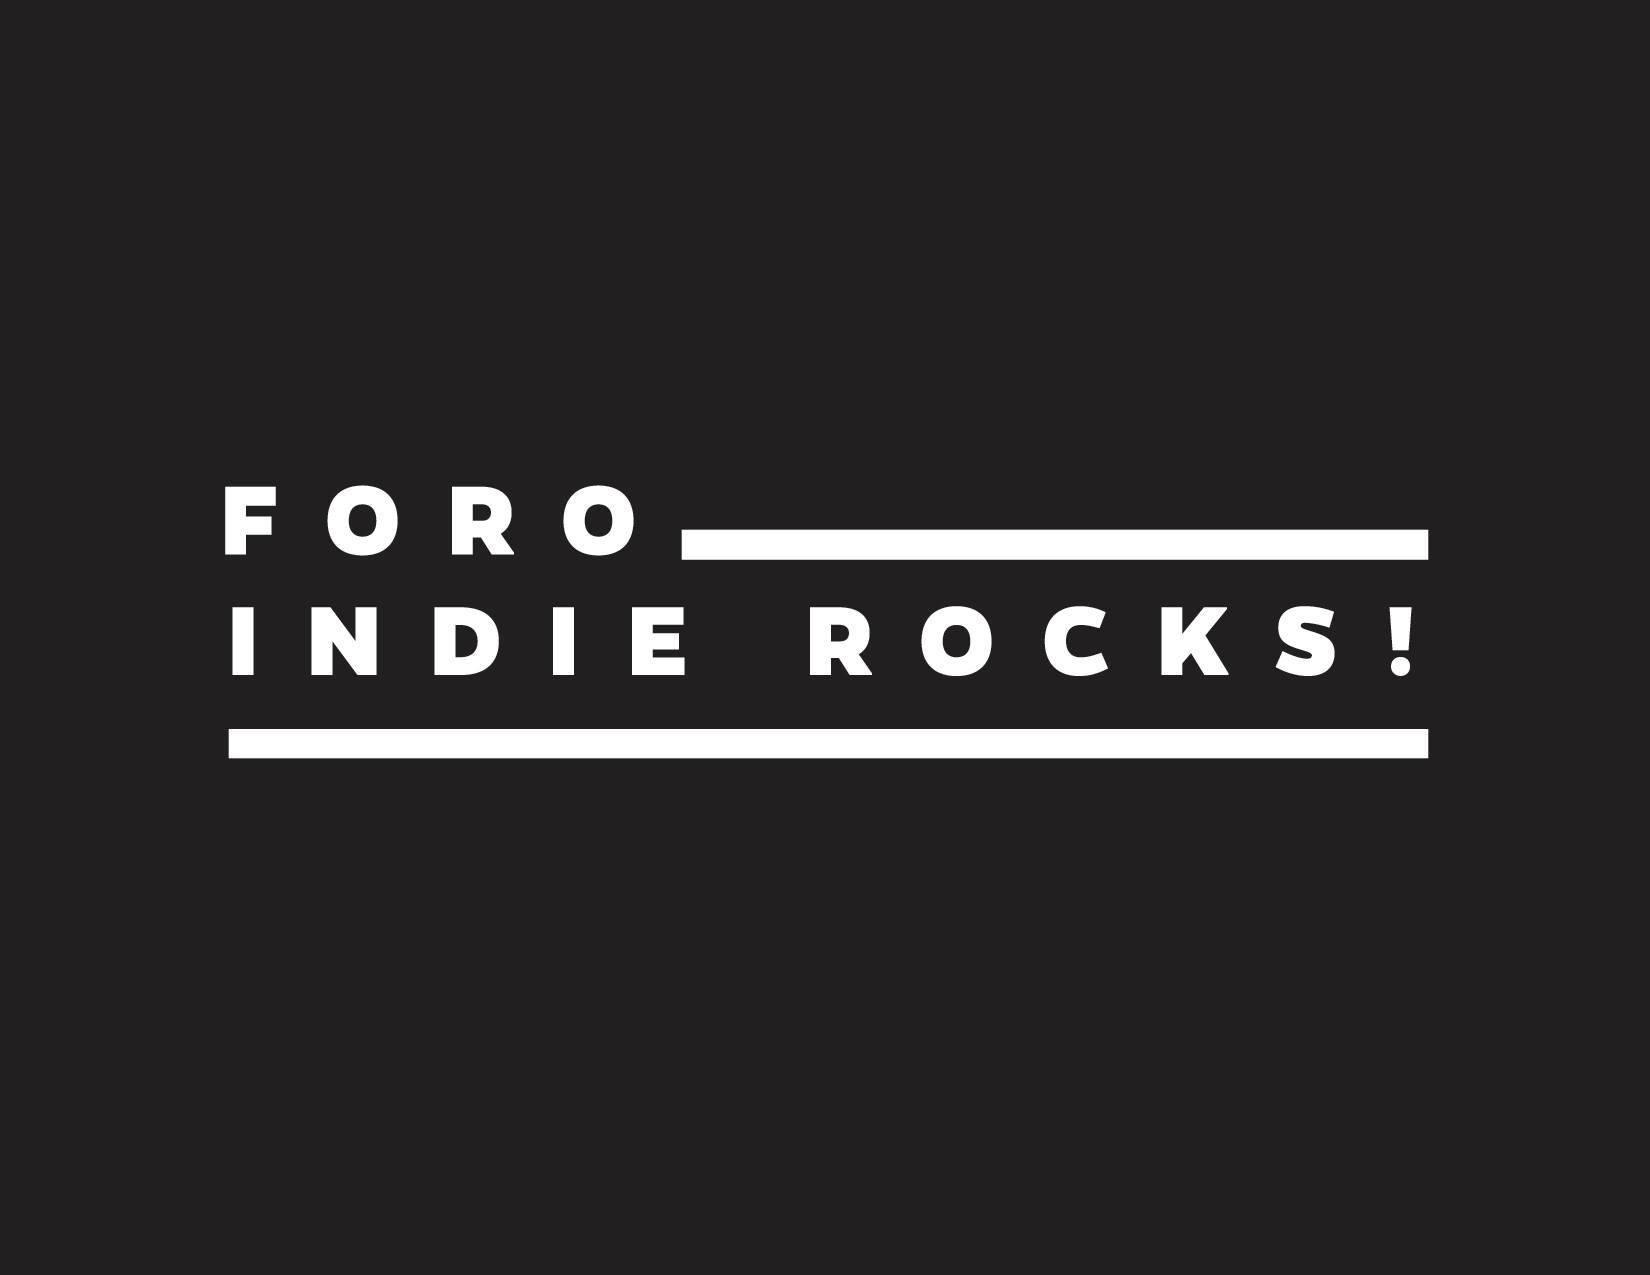 Foro Indie Rocks!